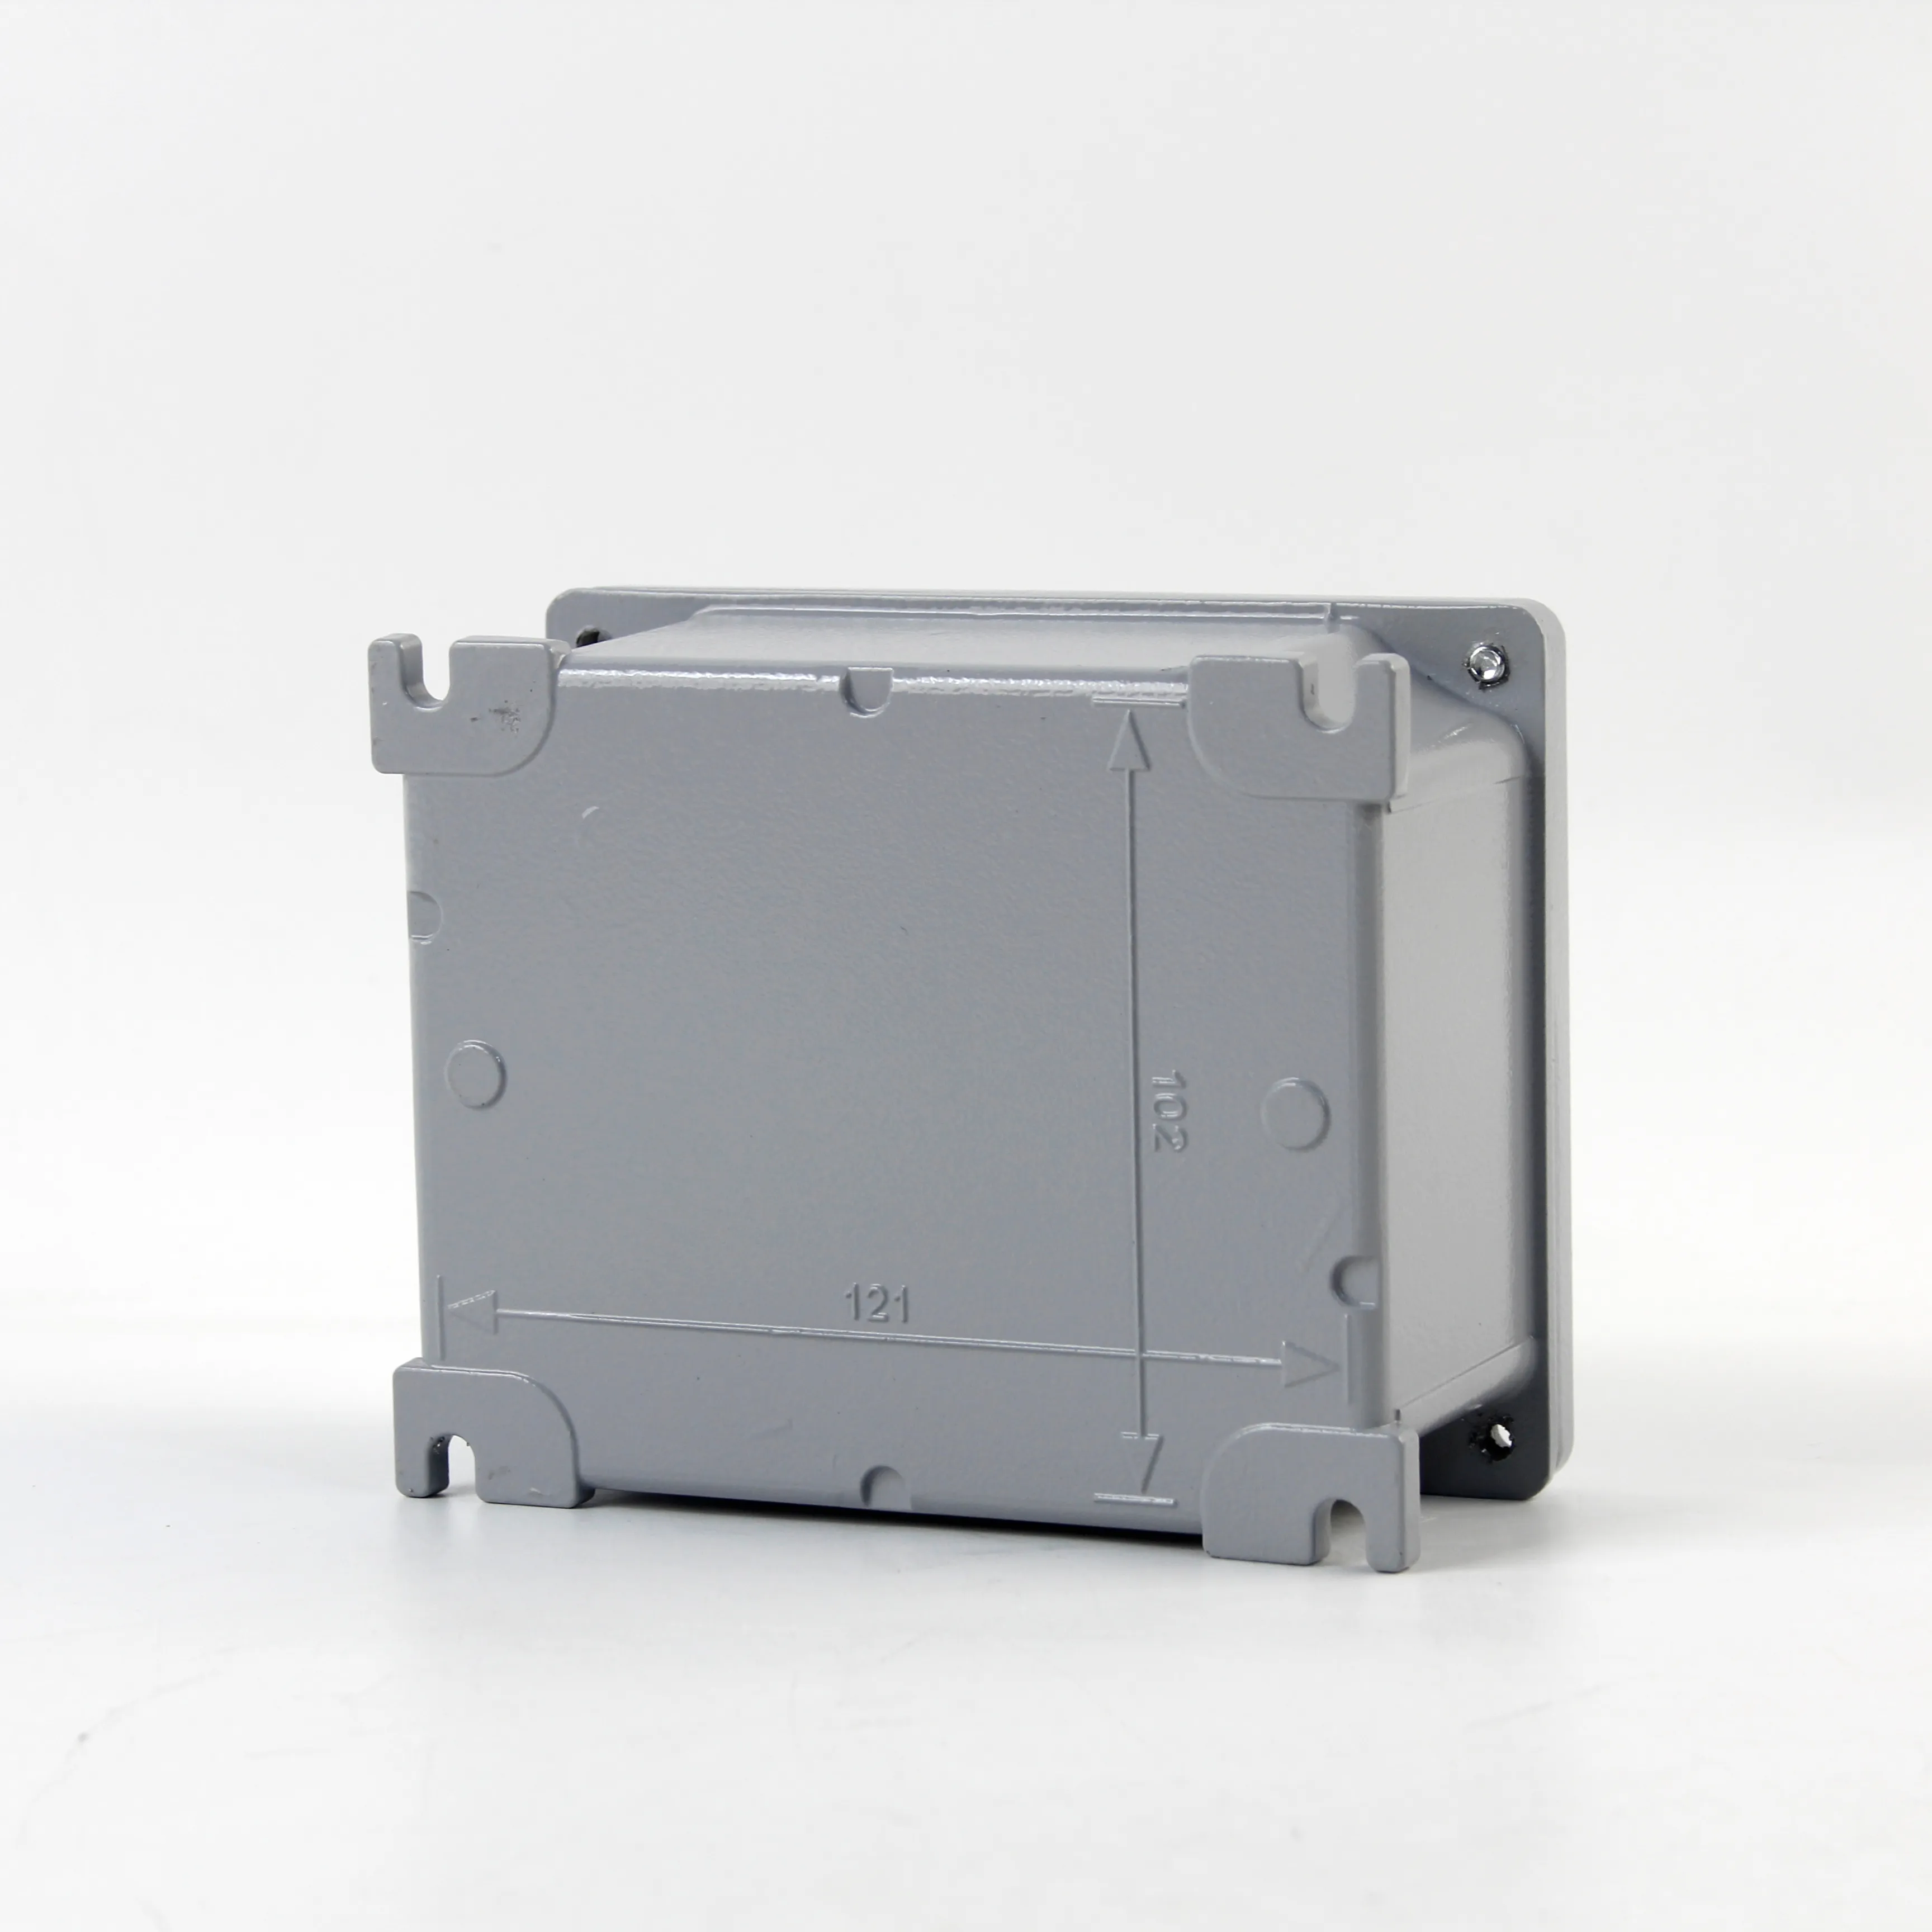 JESIRO kotak Aluminium tahan air IP66 produsen 404*311*153mm dengan flens eksternal kandang tahan air Aluminium